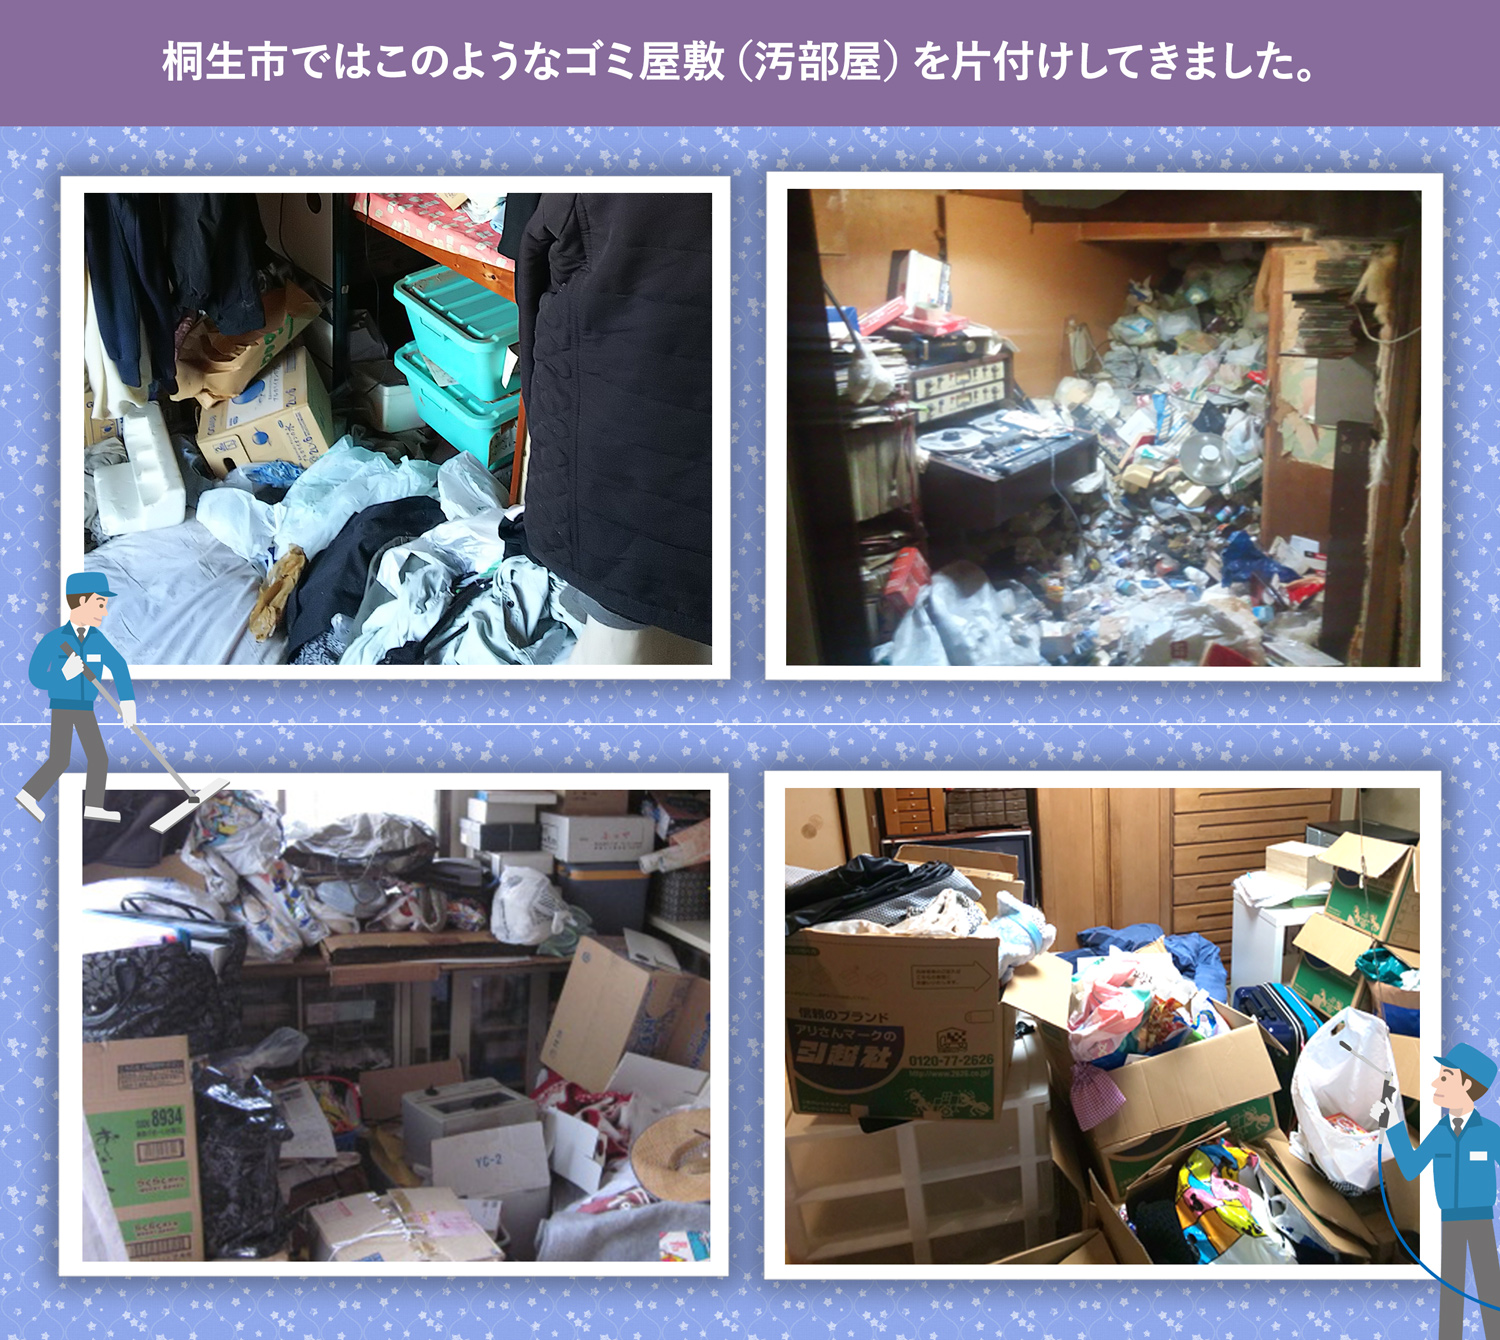 桐生市で行ったで行ったごみ屋敷・汚部屋の片付けの一例